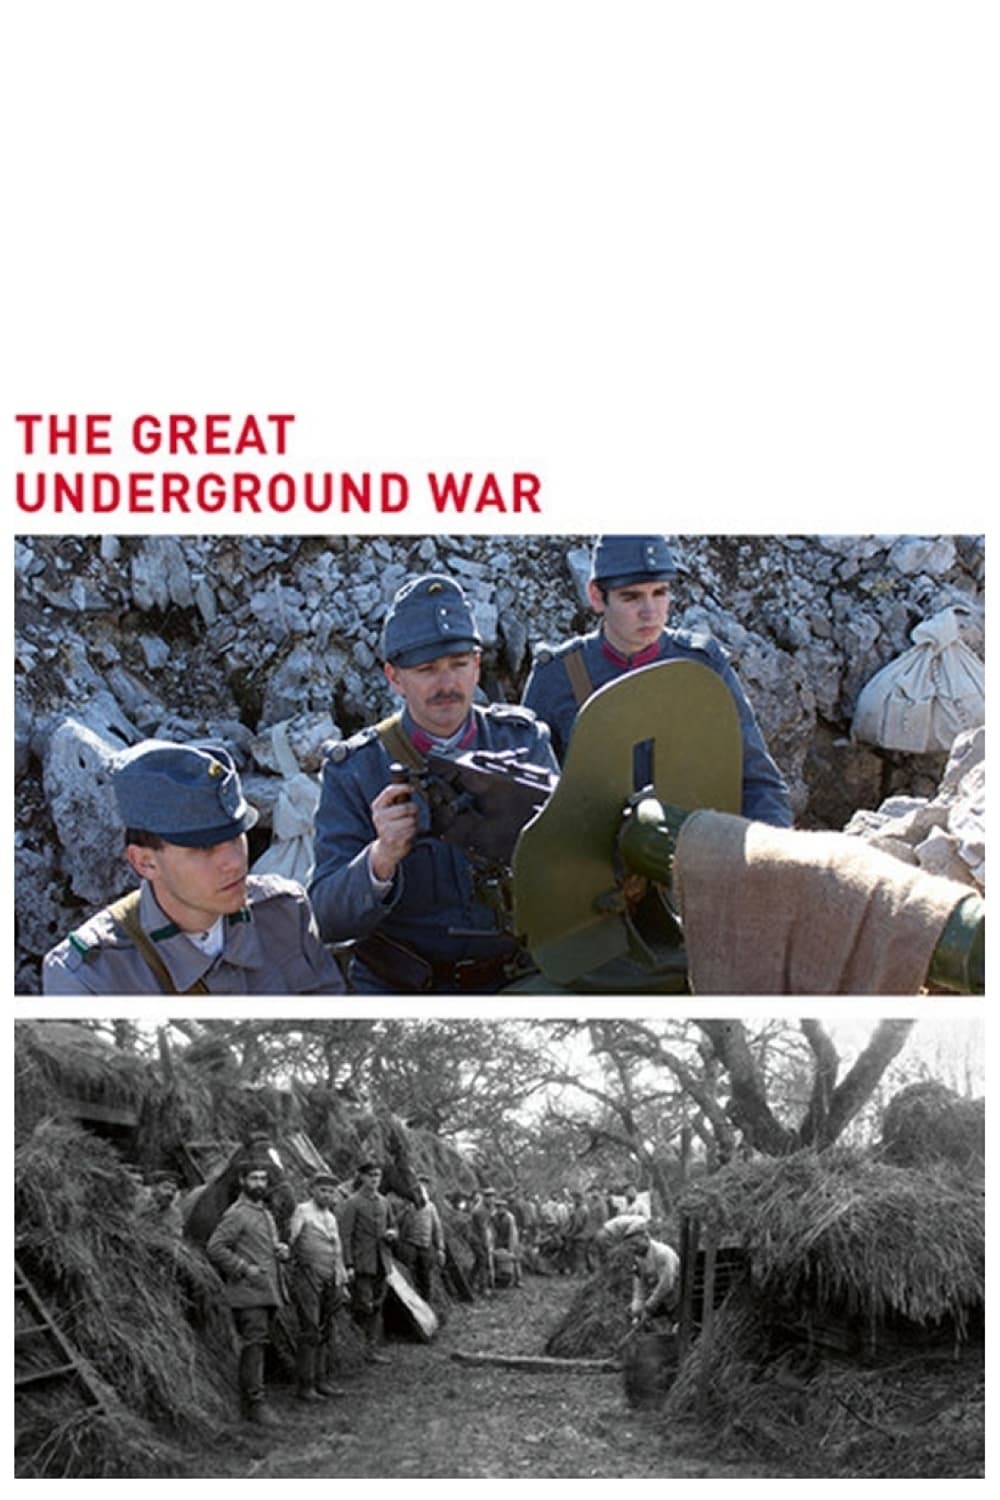 The Great Underground War